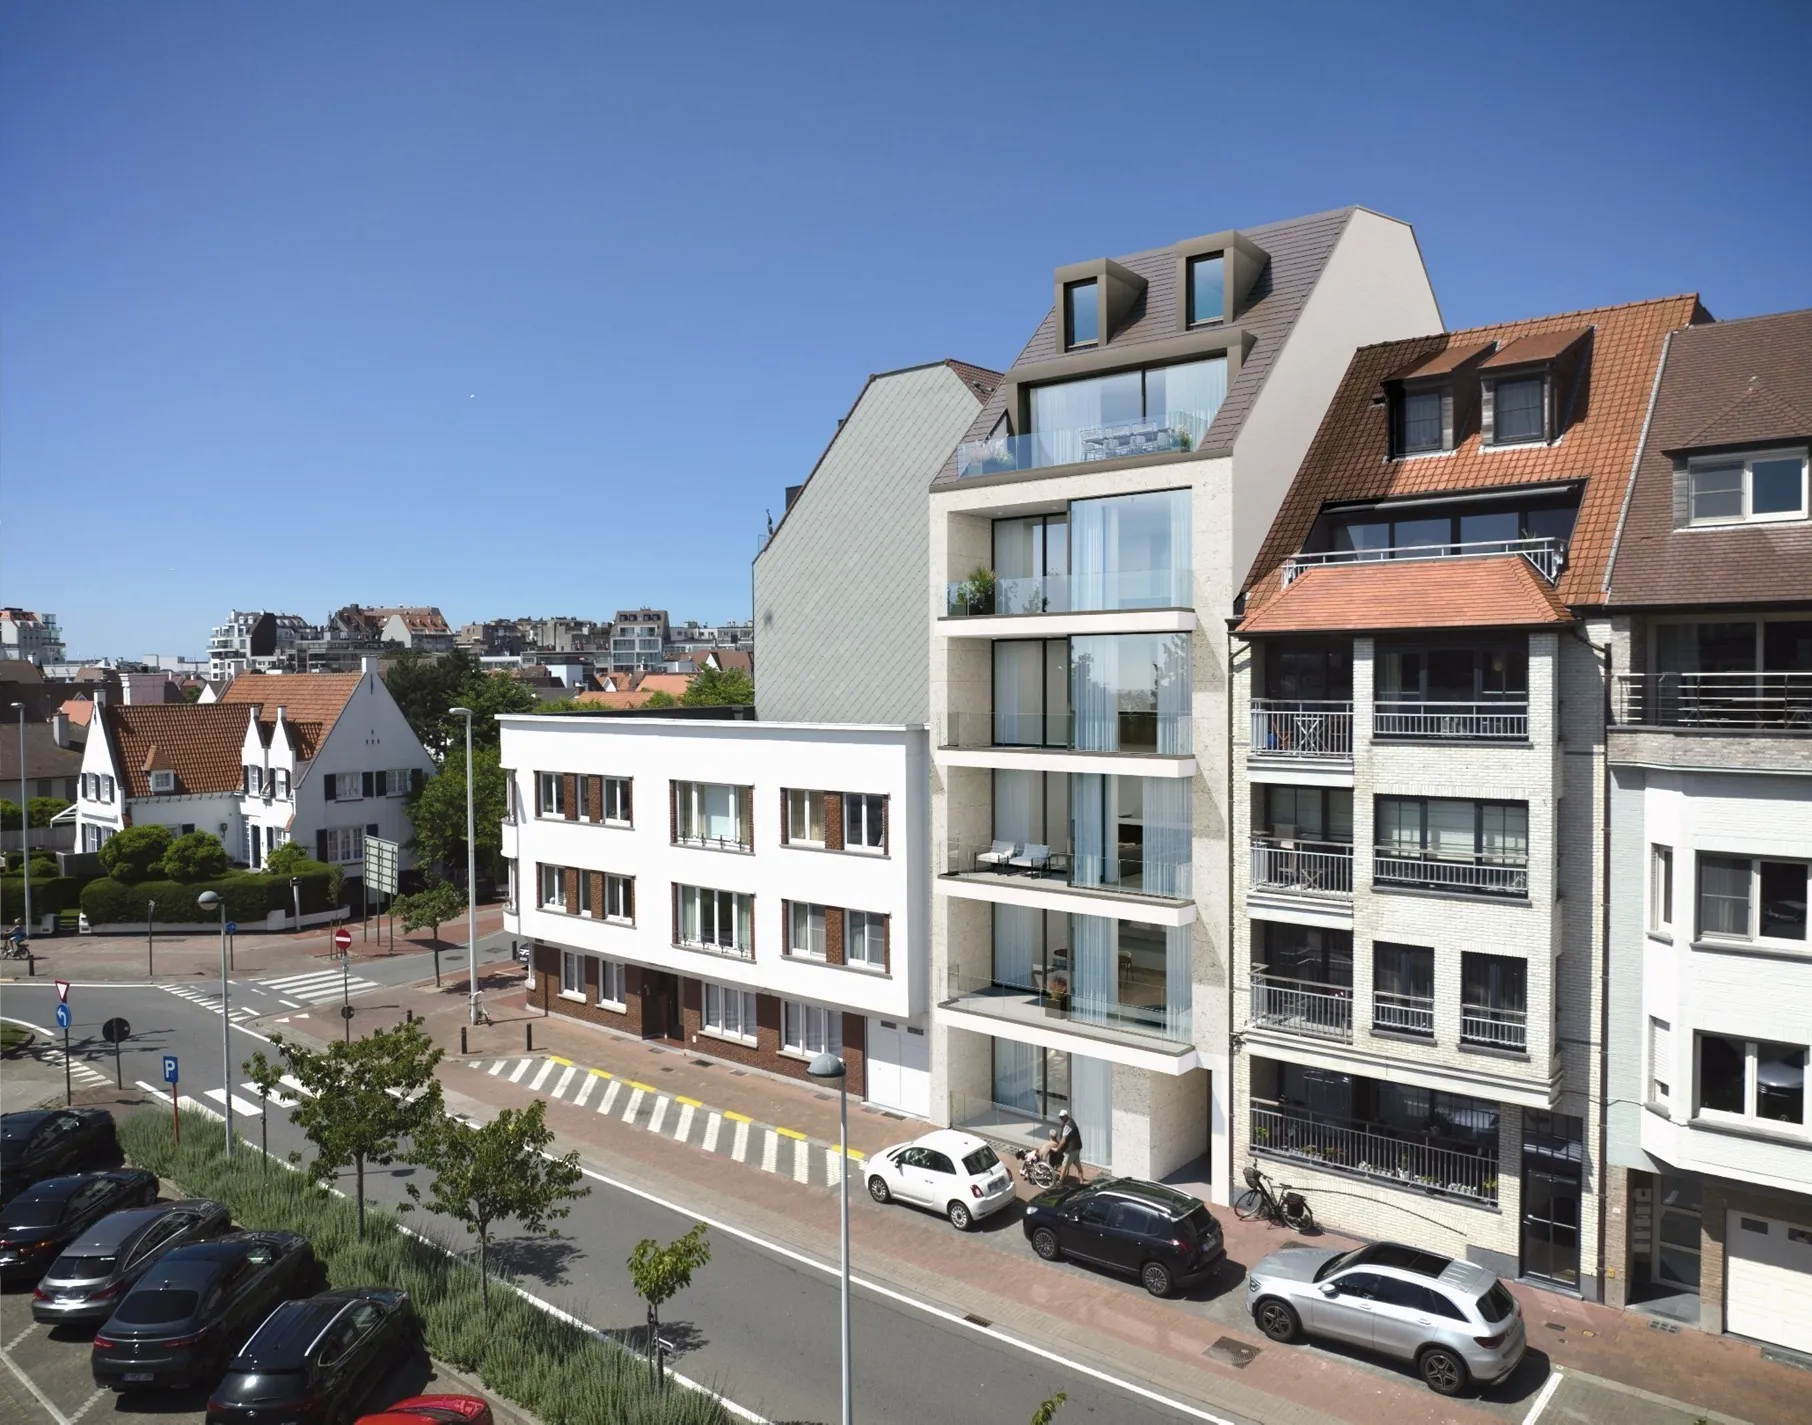 Exclusief nieuwbouwproject "South View" bestaande uit 6 luxe appartementen, allen voorzien van een volwaardig zuidgericht terras en prachtig open zichten. 